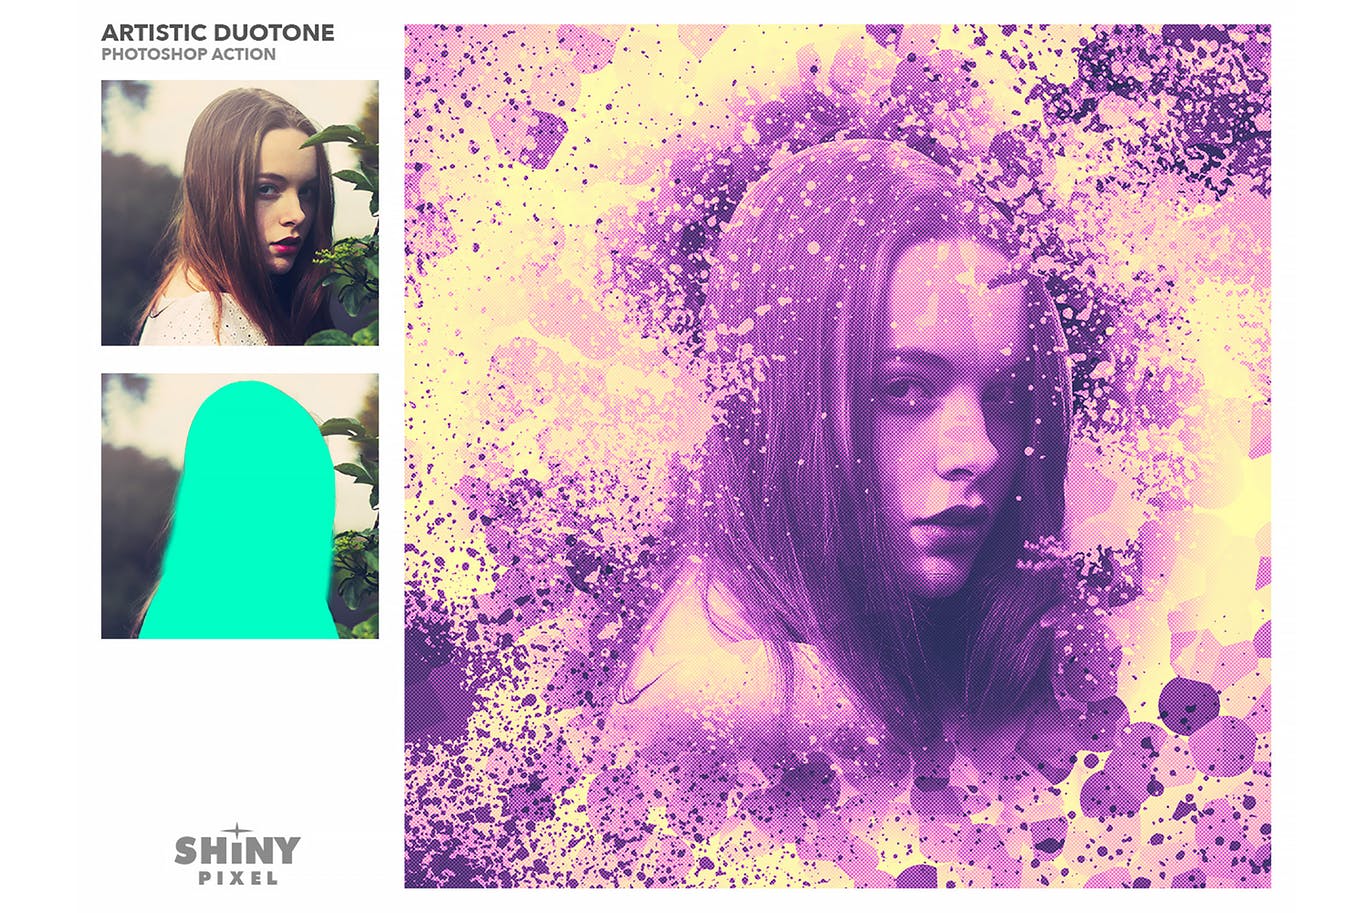 80年底双色调艺术风格效果图片处理PS动作 Artistic Duotone Effect – Photoshop Action插图(3)